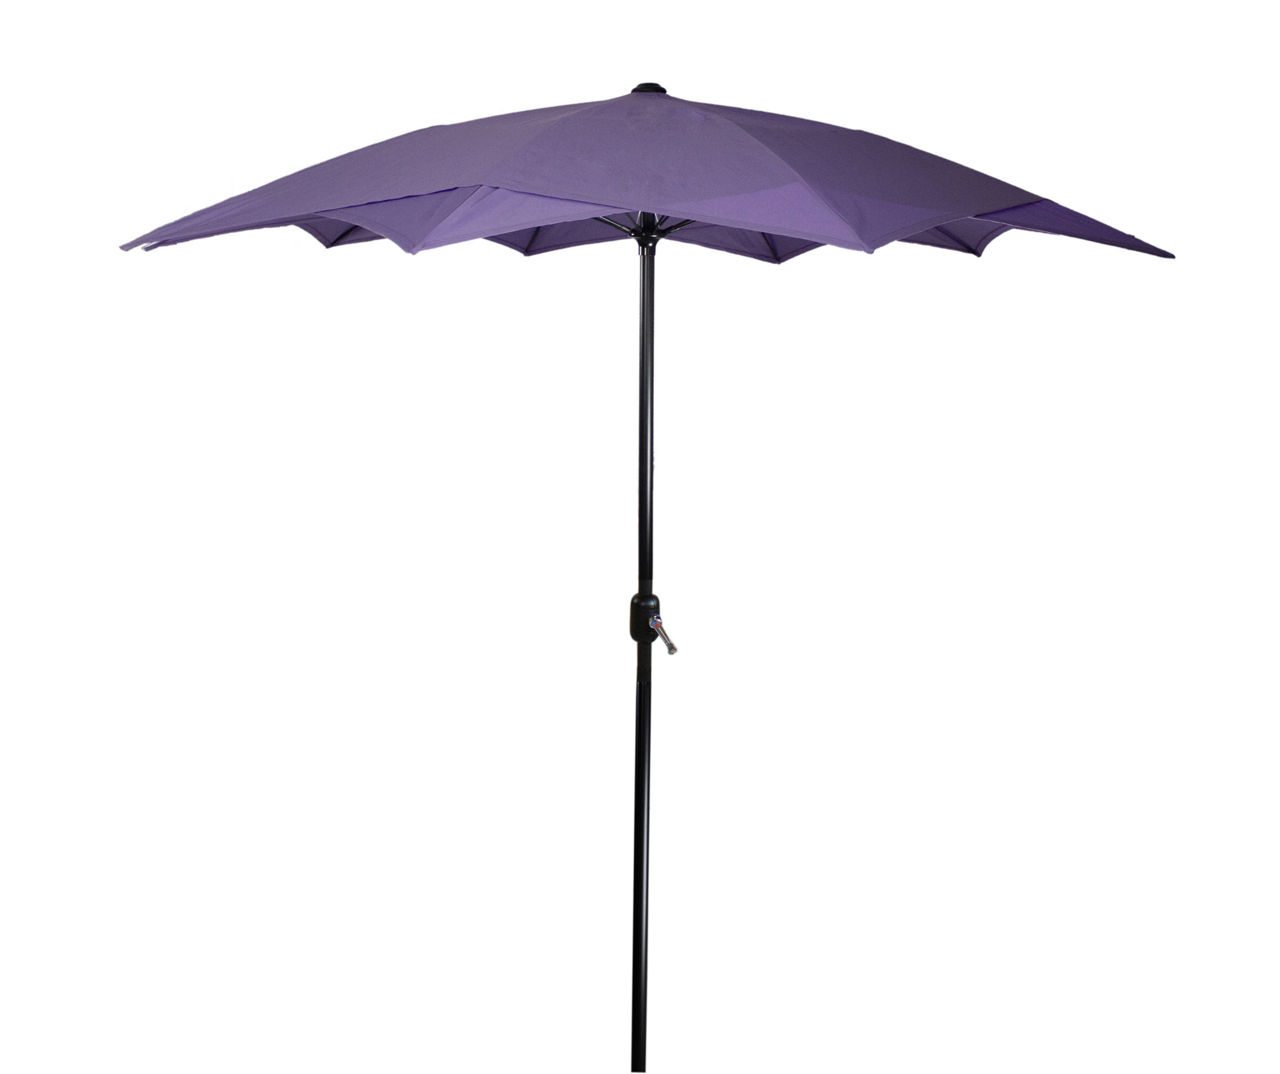 8.8' Purple Lotus Patio Umbrella